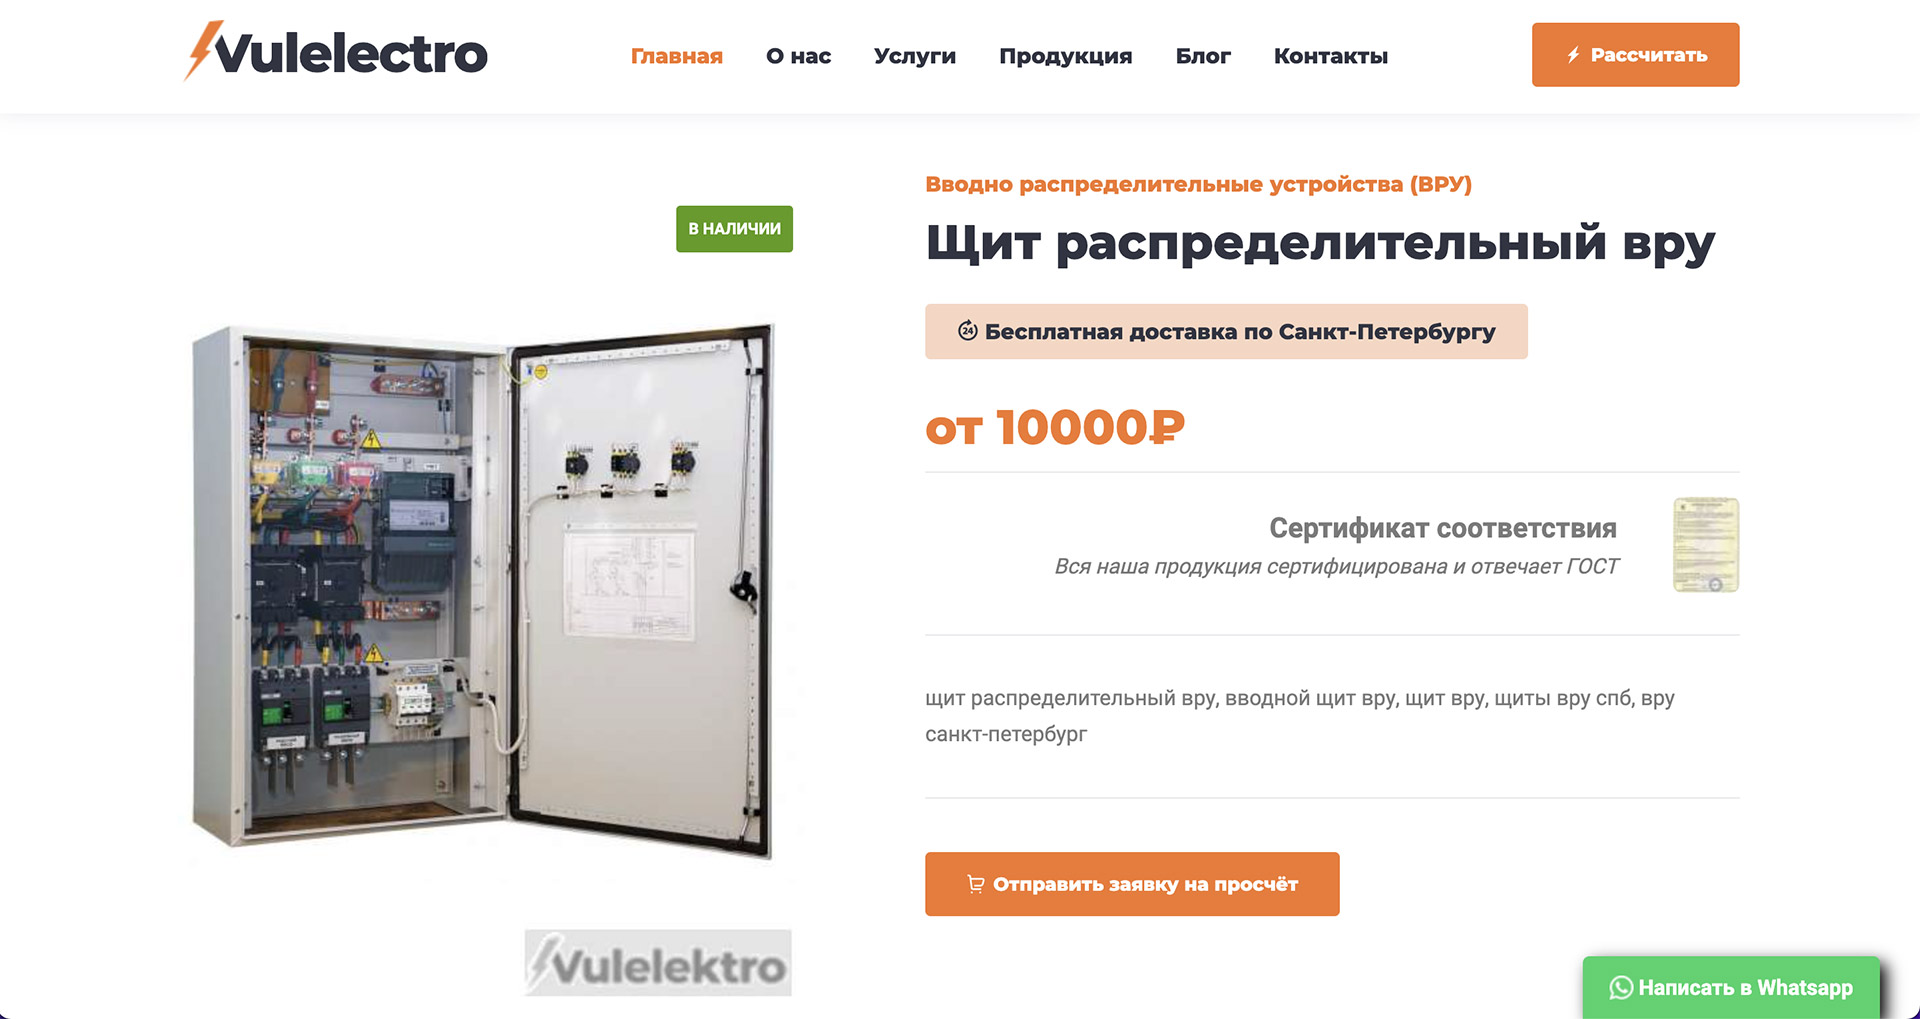 Брендинг и сайт для компании Vulelectro